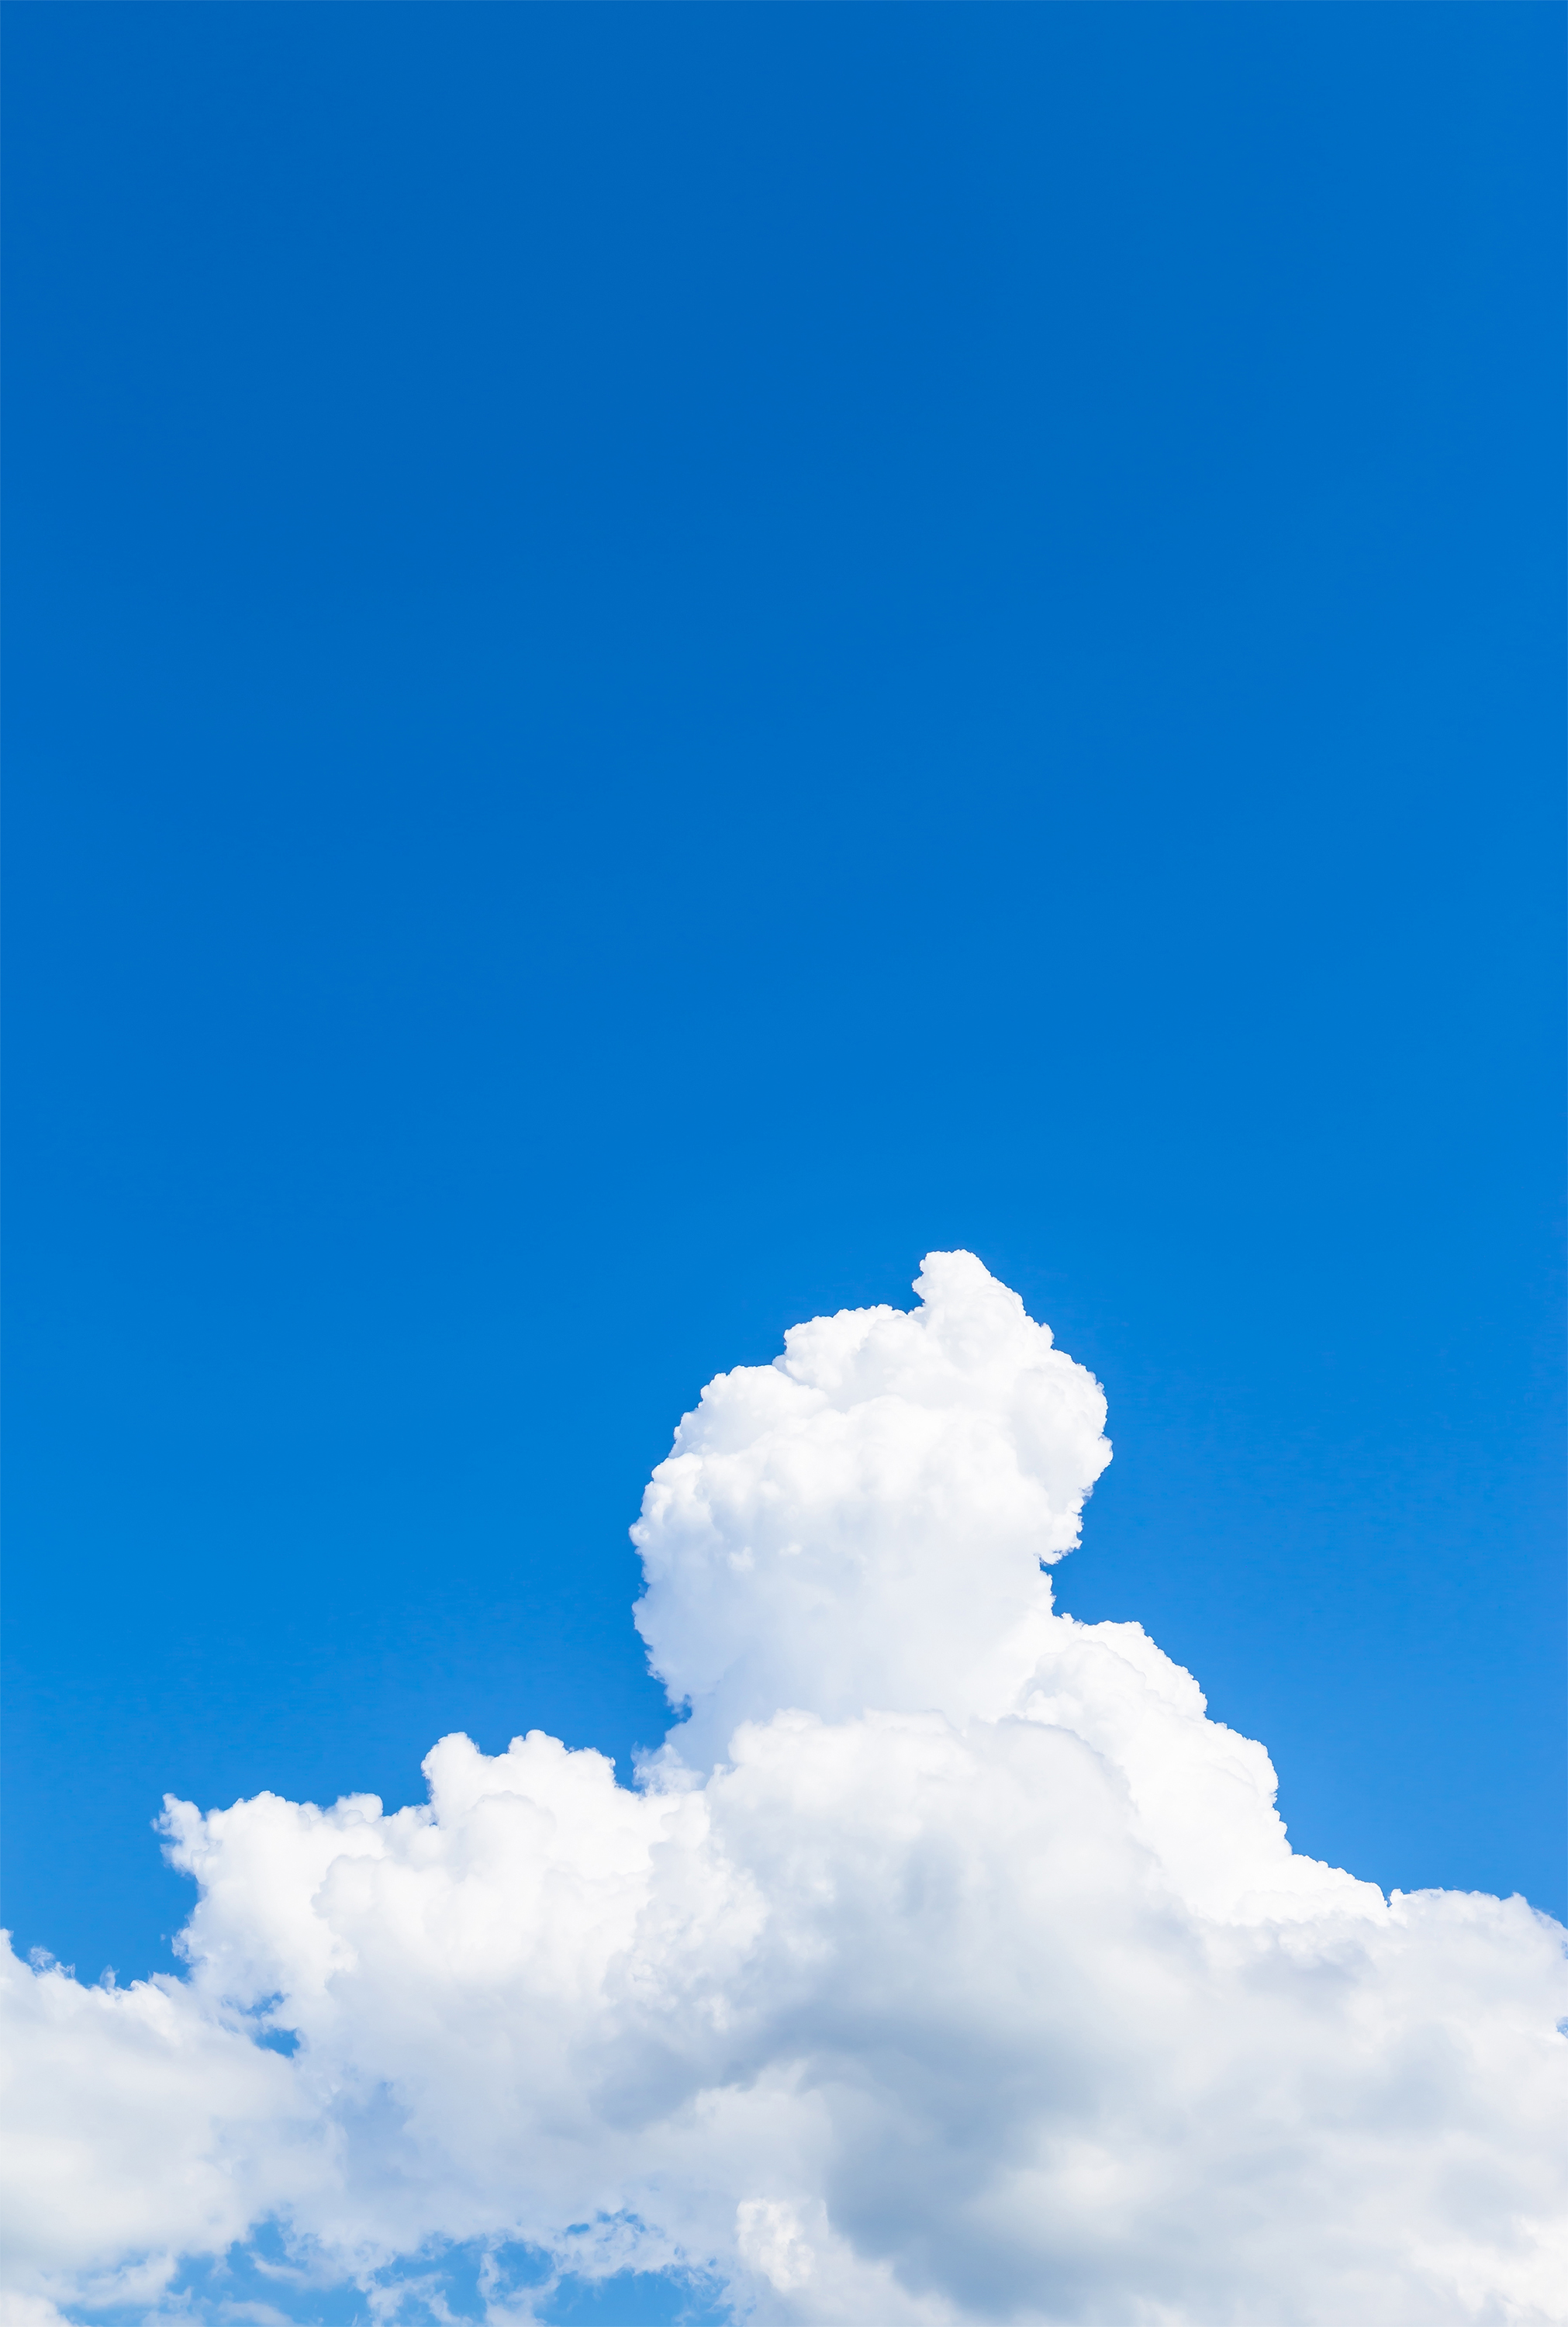 真夏の入道雲05 無料の高画質フリー写真素材 イメージズラボ